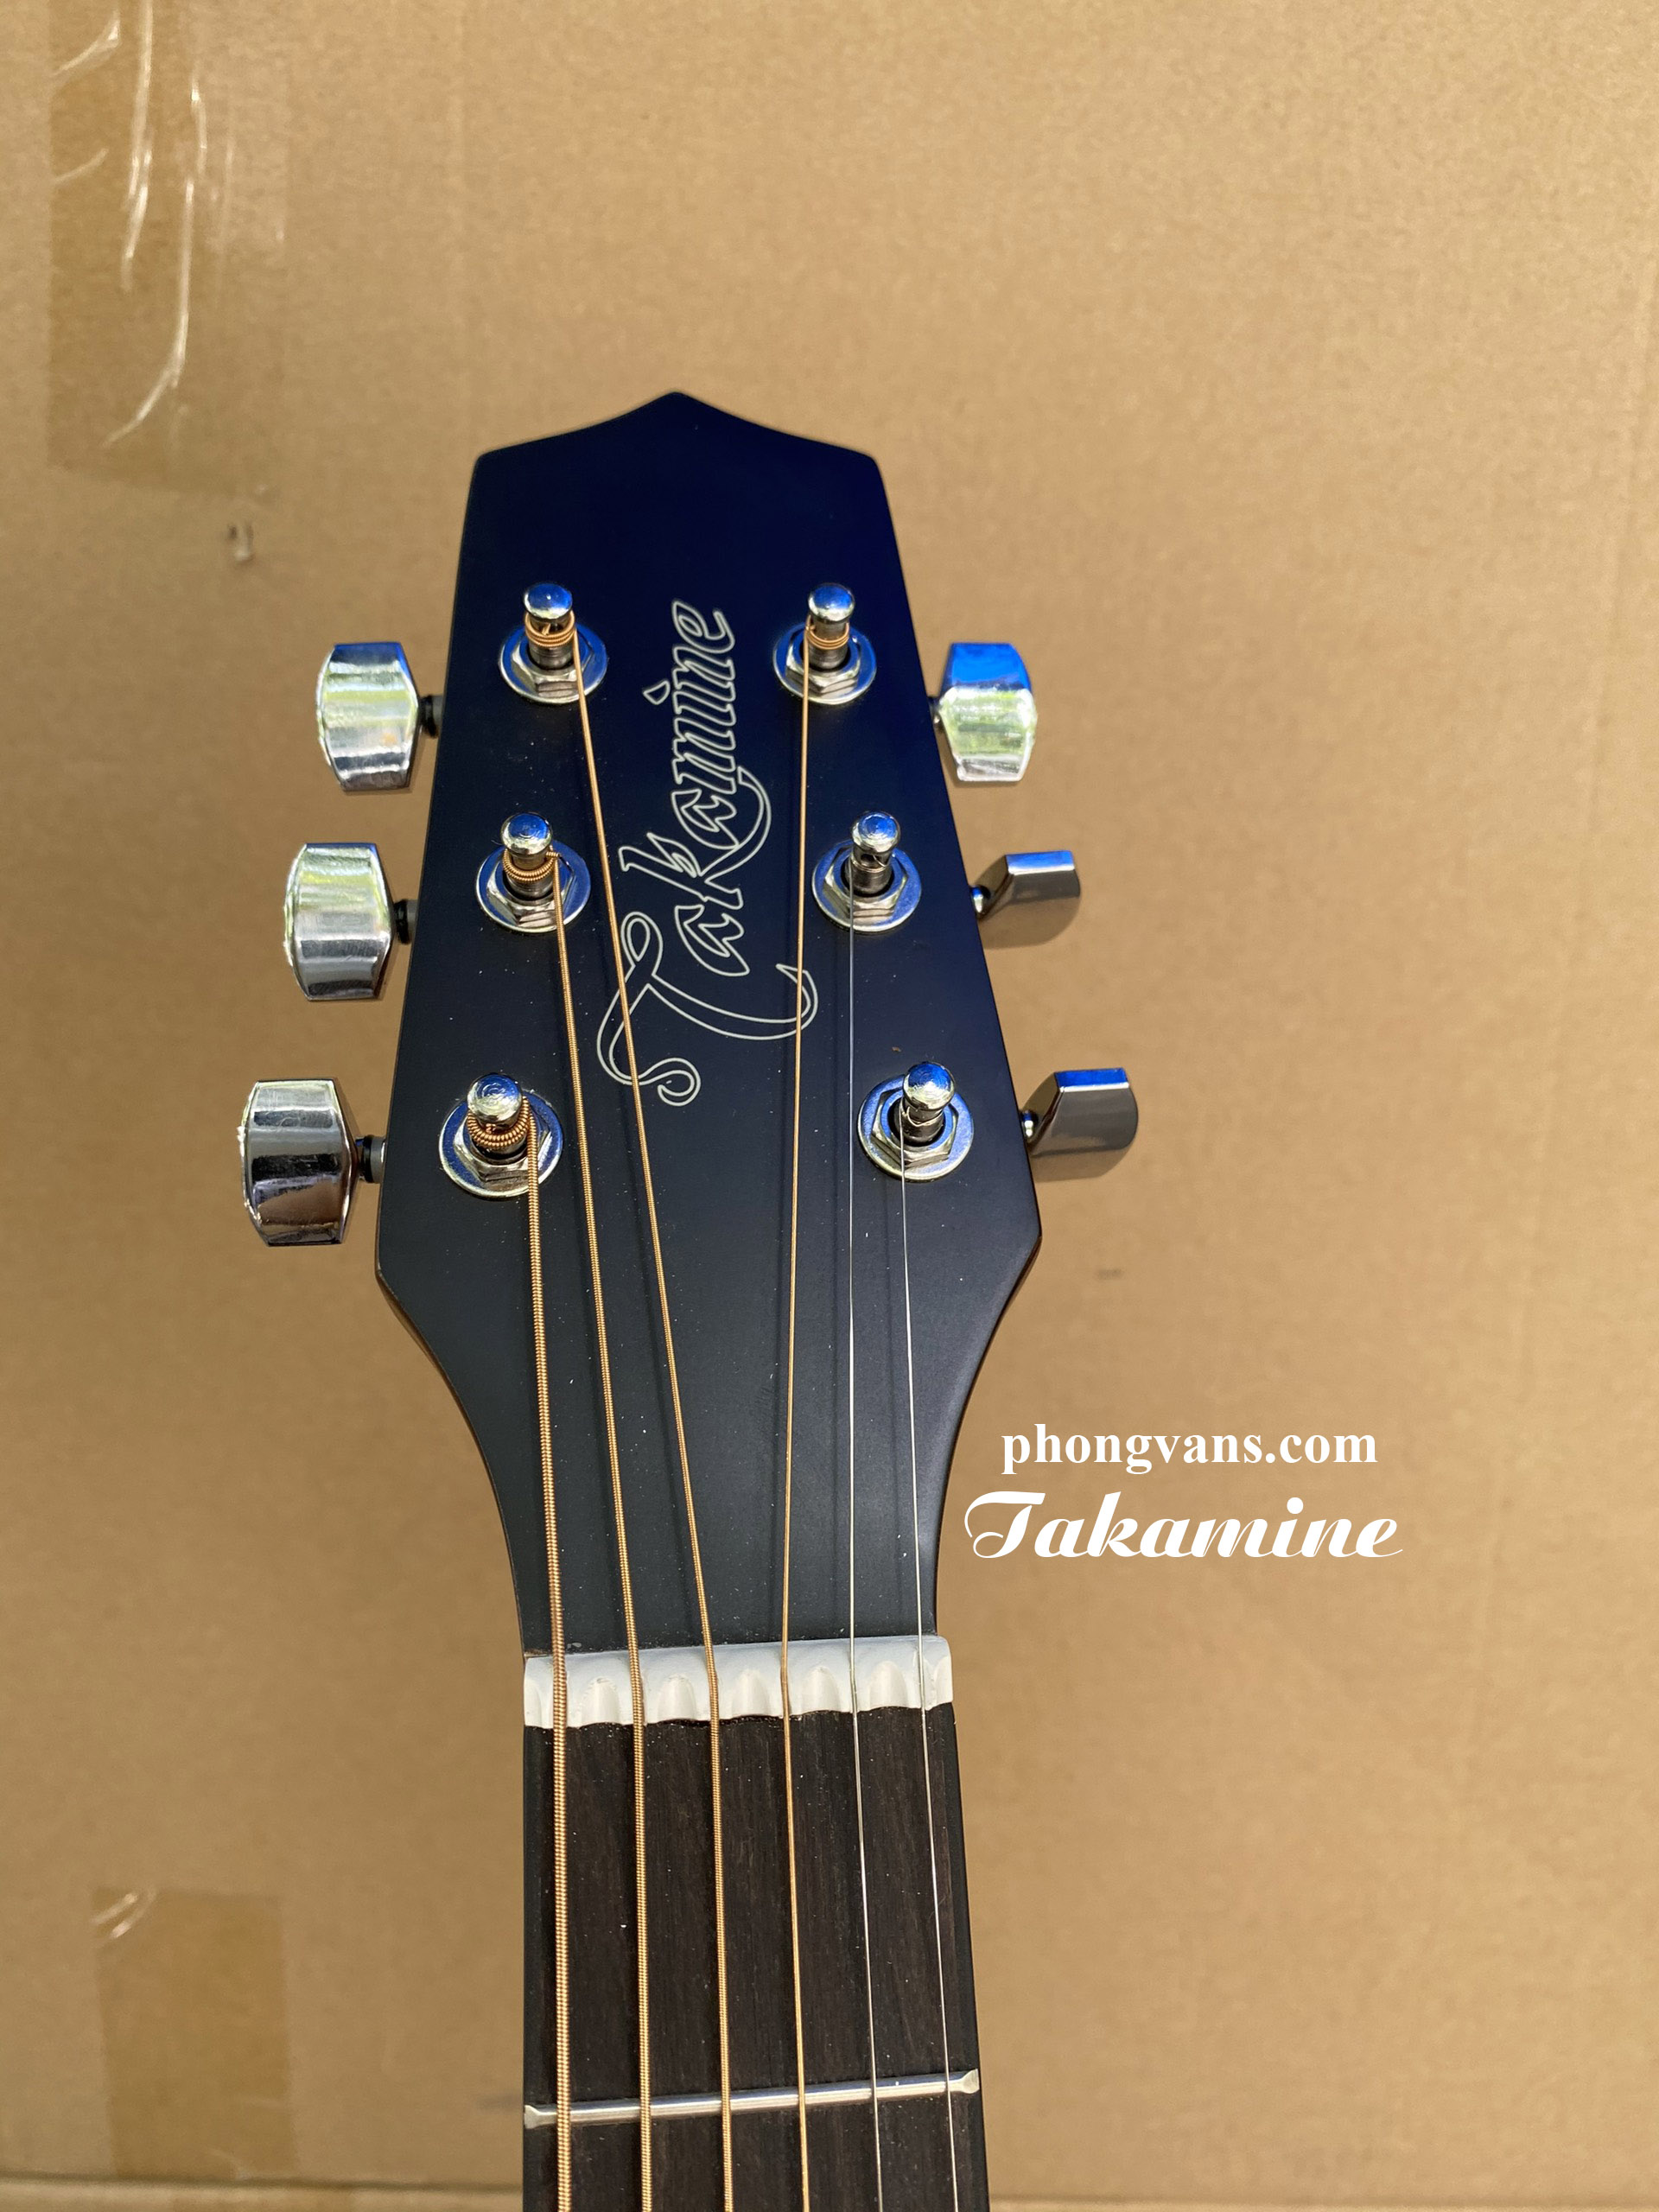 Bán sỉ guitar acoustic Takamine GD15C